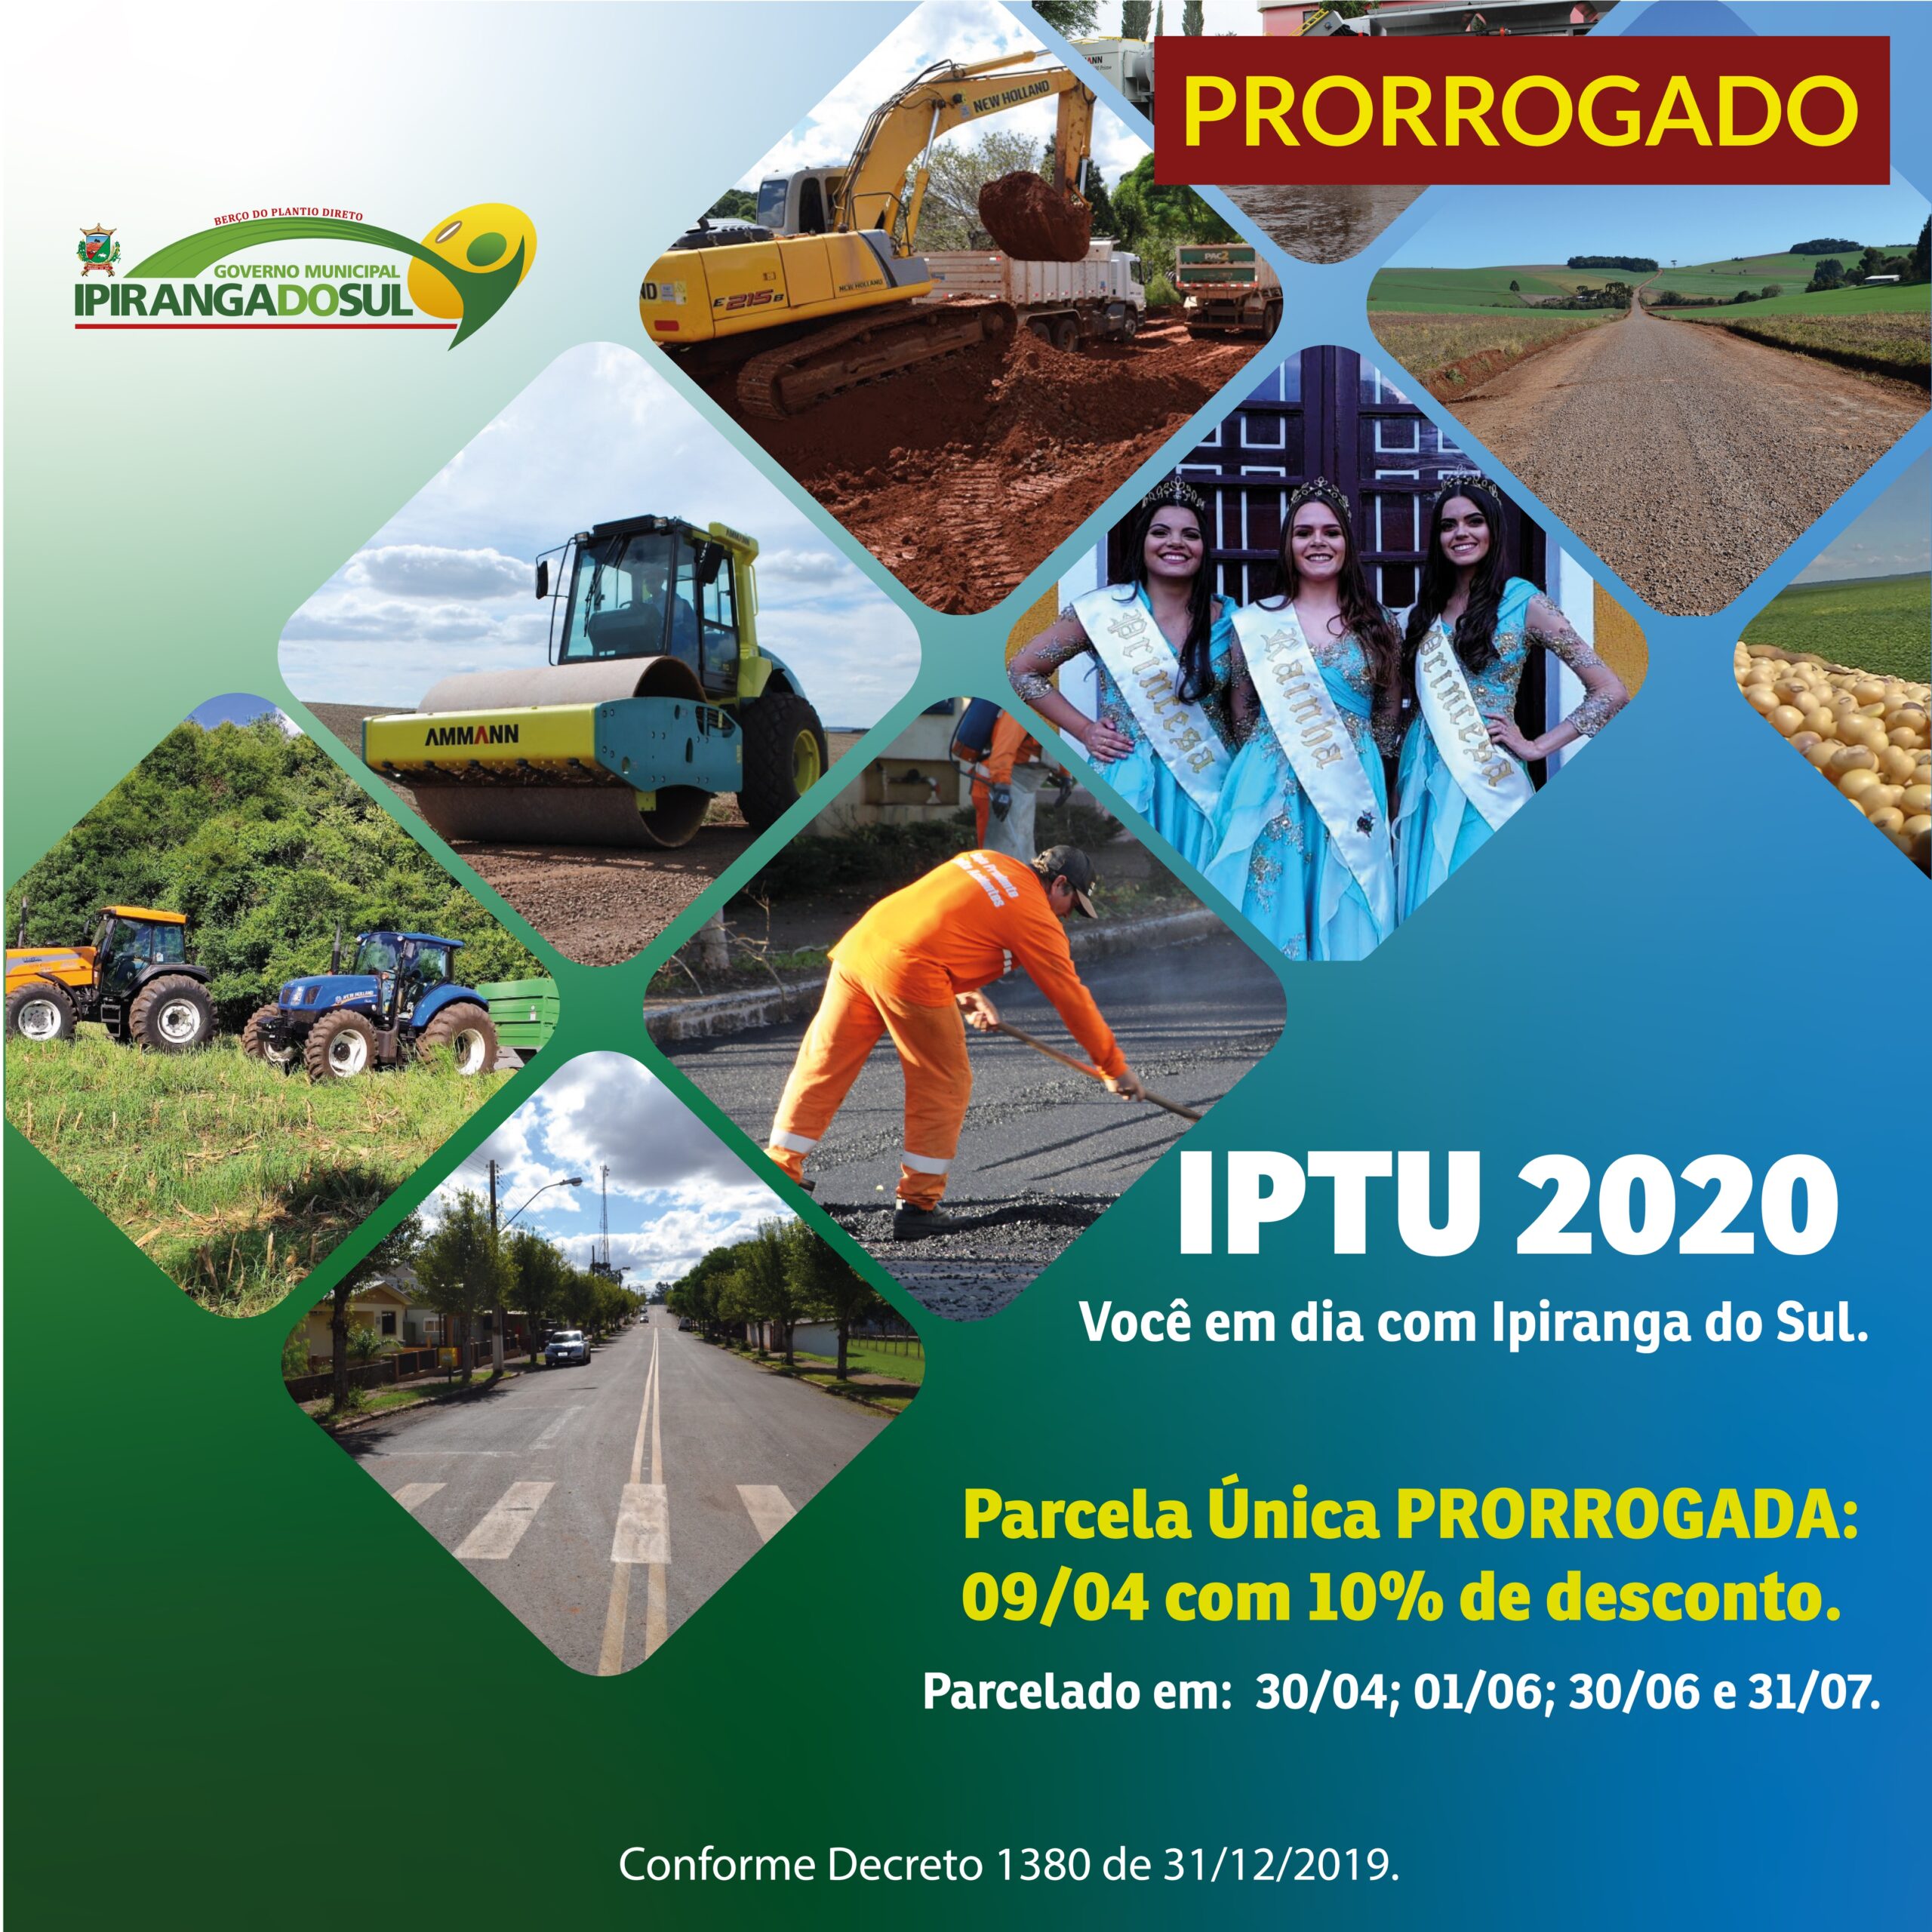 IPTU e Alvará em Ipiranga do Sul tem pagamento prorrogado